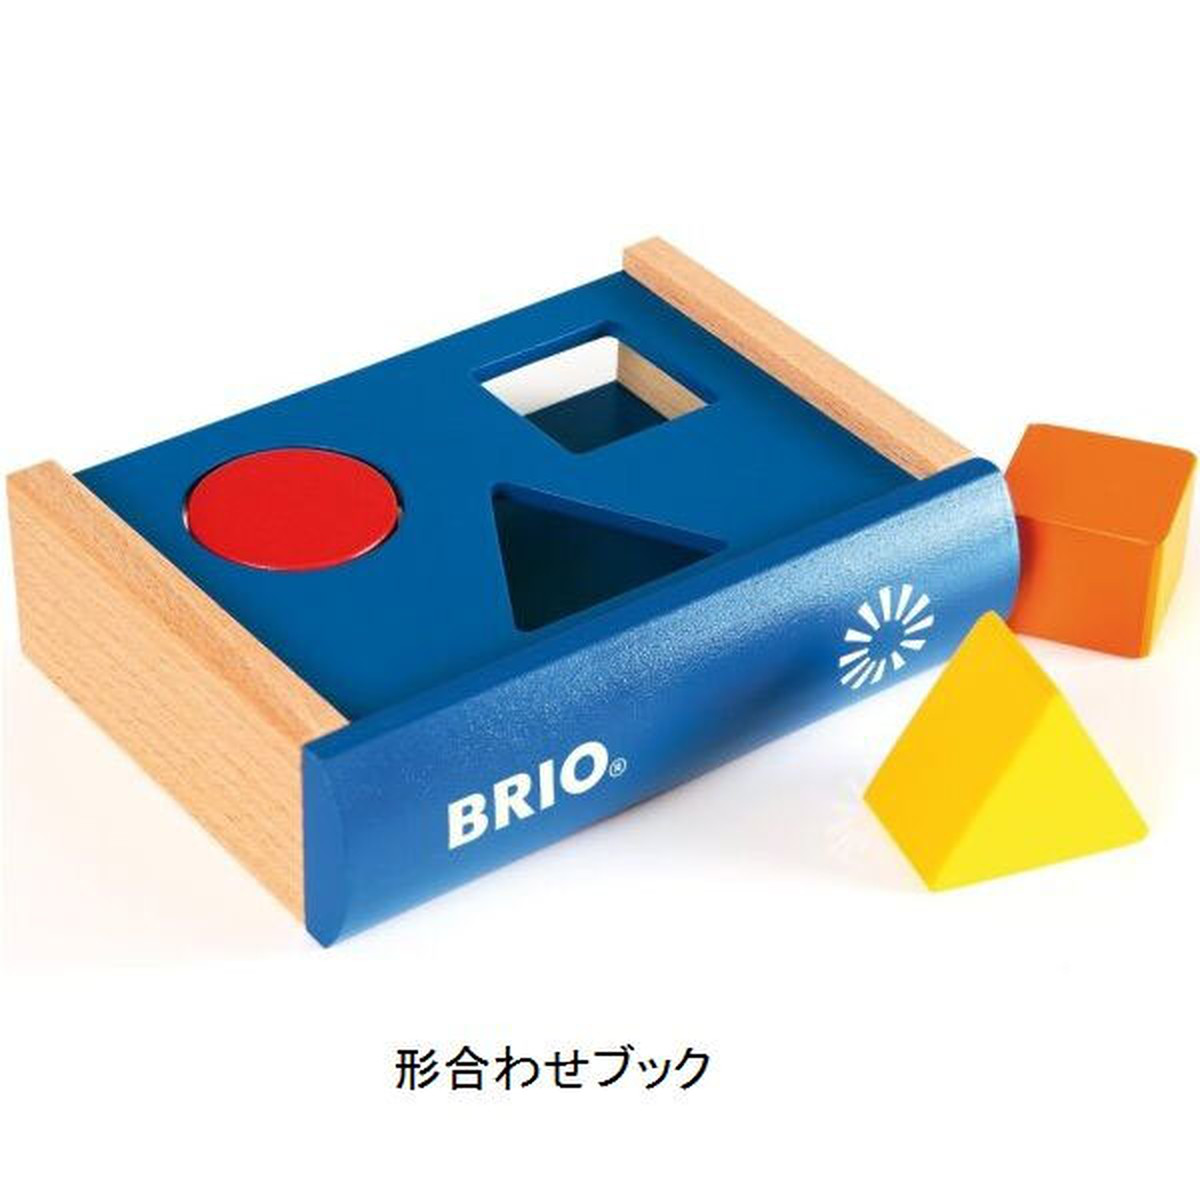 ブックタイプのおもちゃ ブリオ 玩具 Brio ブリオ 形合わせブック Mon Petit Toys Store